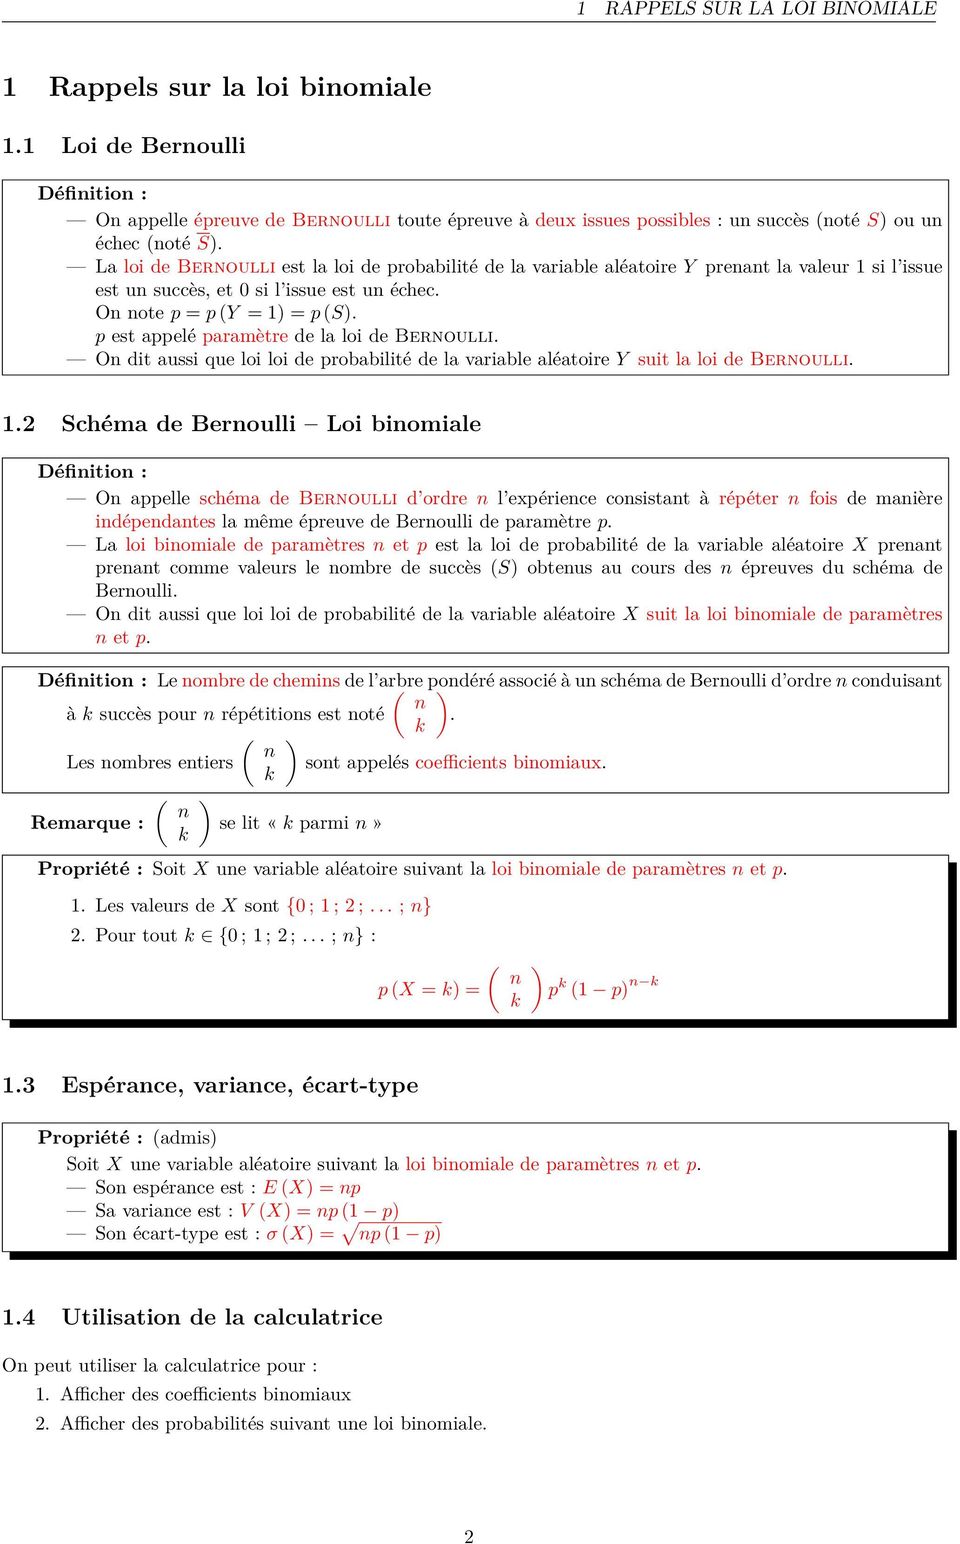 La loi de Bernoulli est la loi de probabilité de la variable aléatoire Y prenant la valeur si l issue est un succès, et 0 si l issue est un échec. On note p = p (Y = ) = p (S).